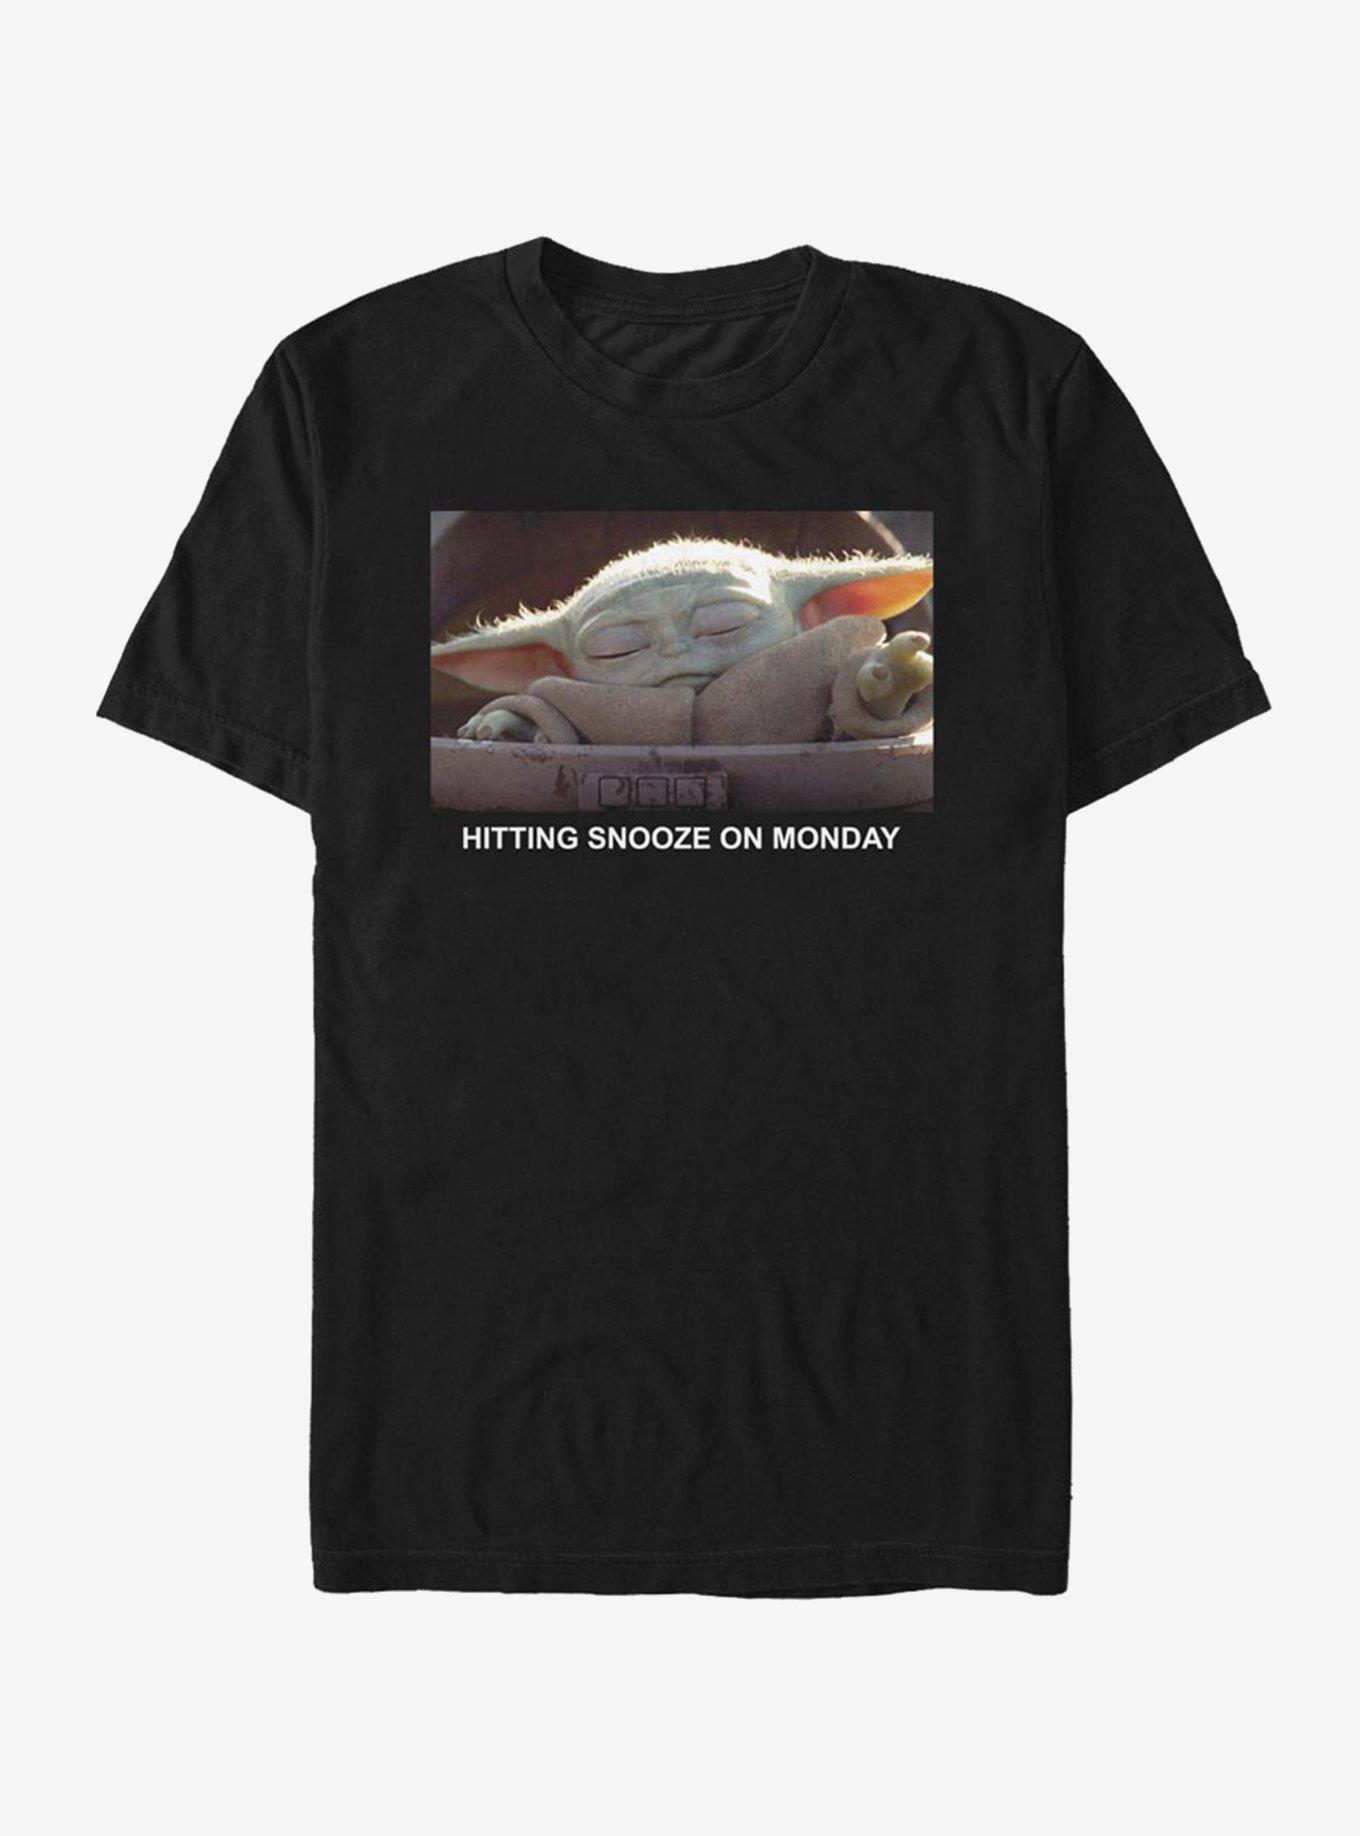 Star Wars The Mandalorian Sleep Meme T-Shirt